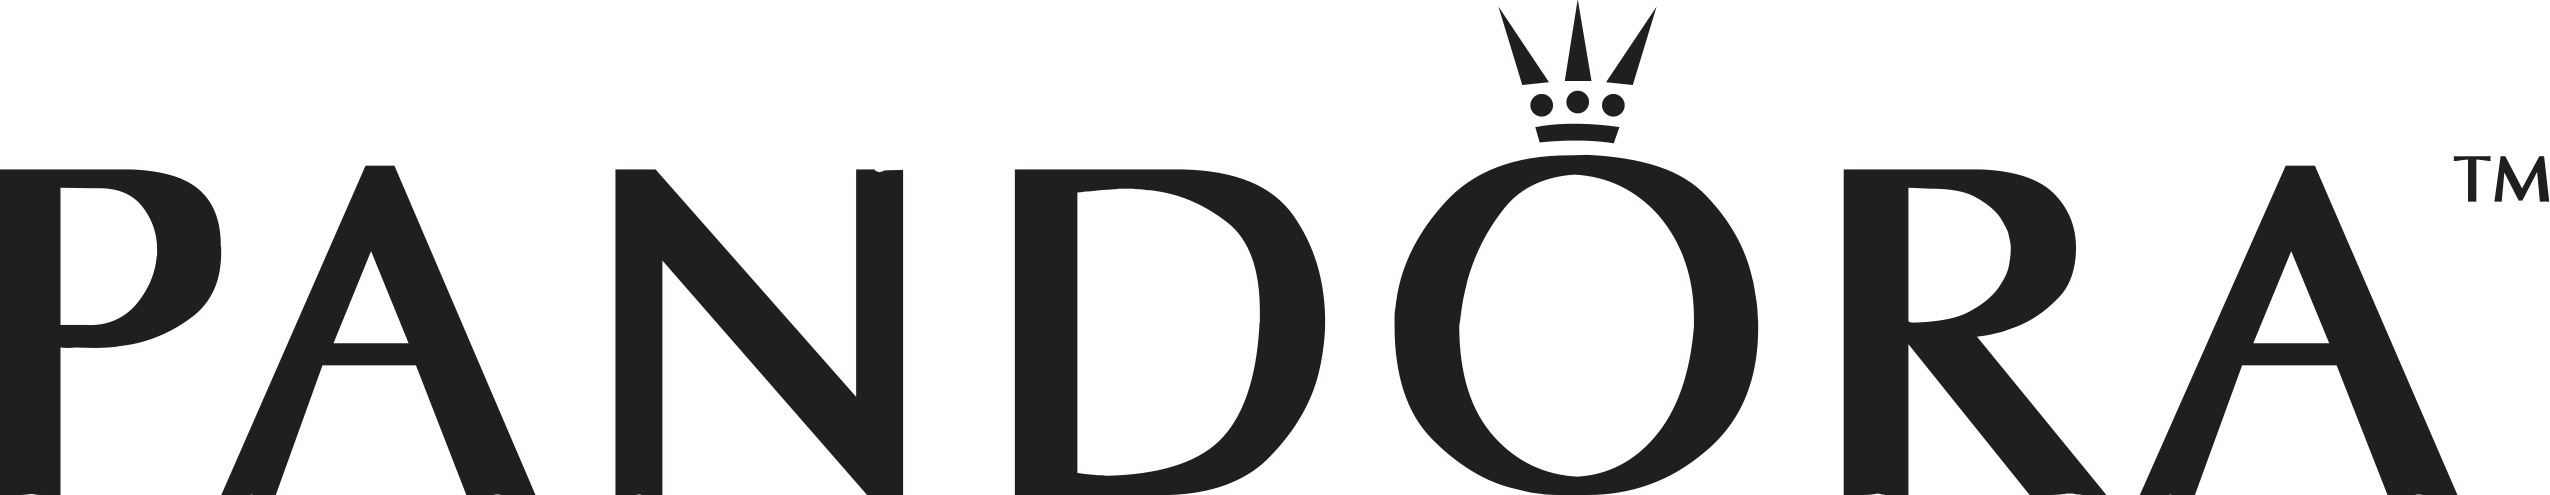 El logotipo de Pandora es un reflejo de la elegancia que la marca ofrece en sus productos, tal cual si fueran diseños de la realeza.